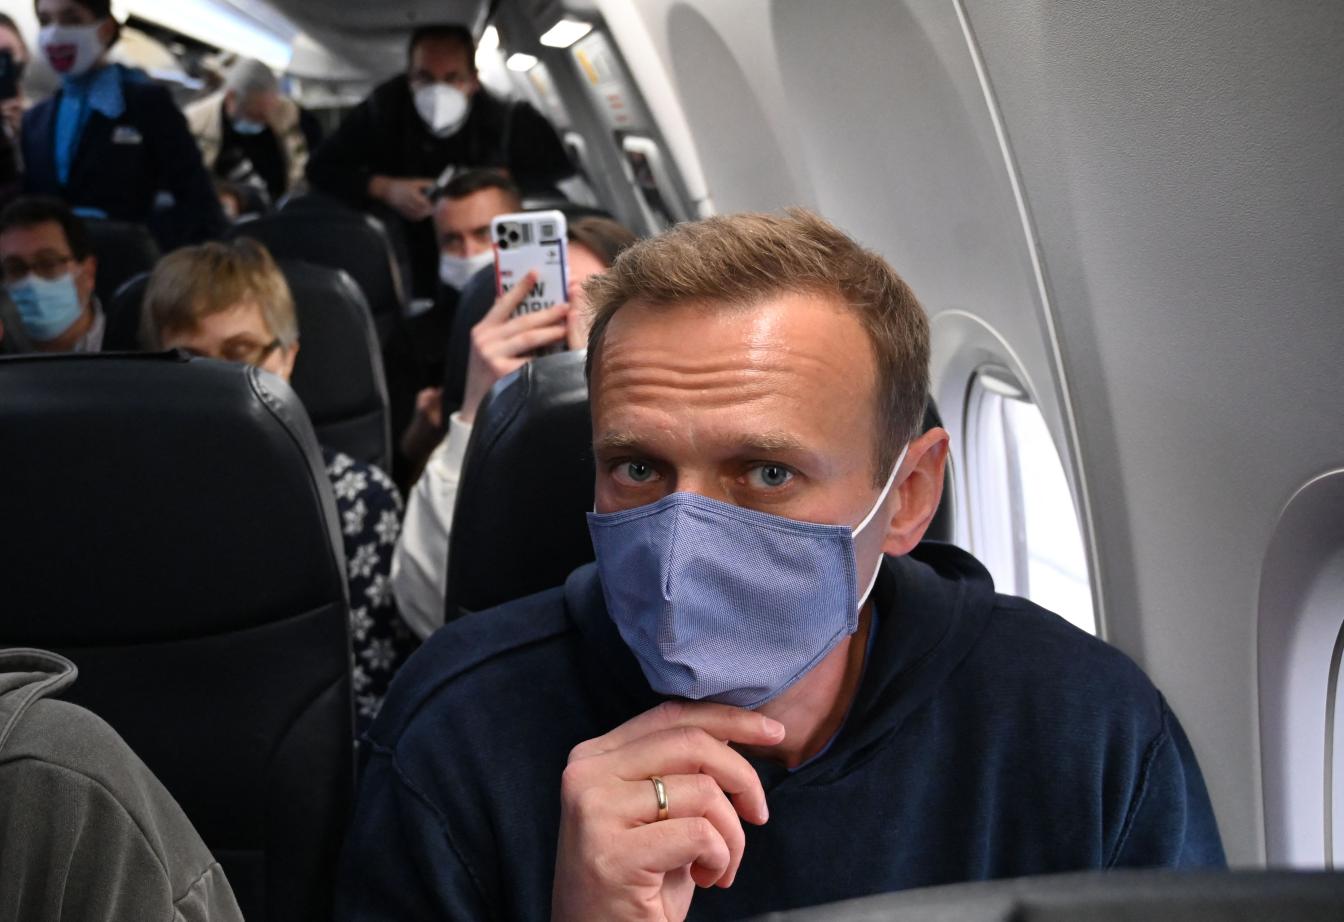 Am 17. Jänner 2021 wurde Navalny noch auf dem Moskauer Flughafen verhaftet.